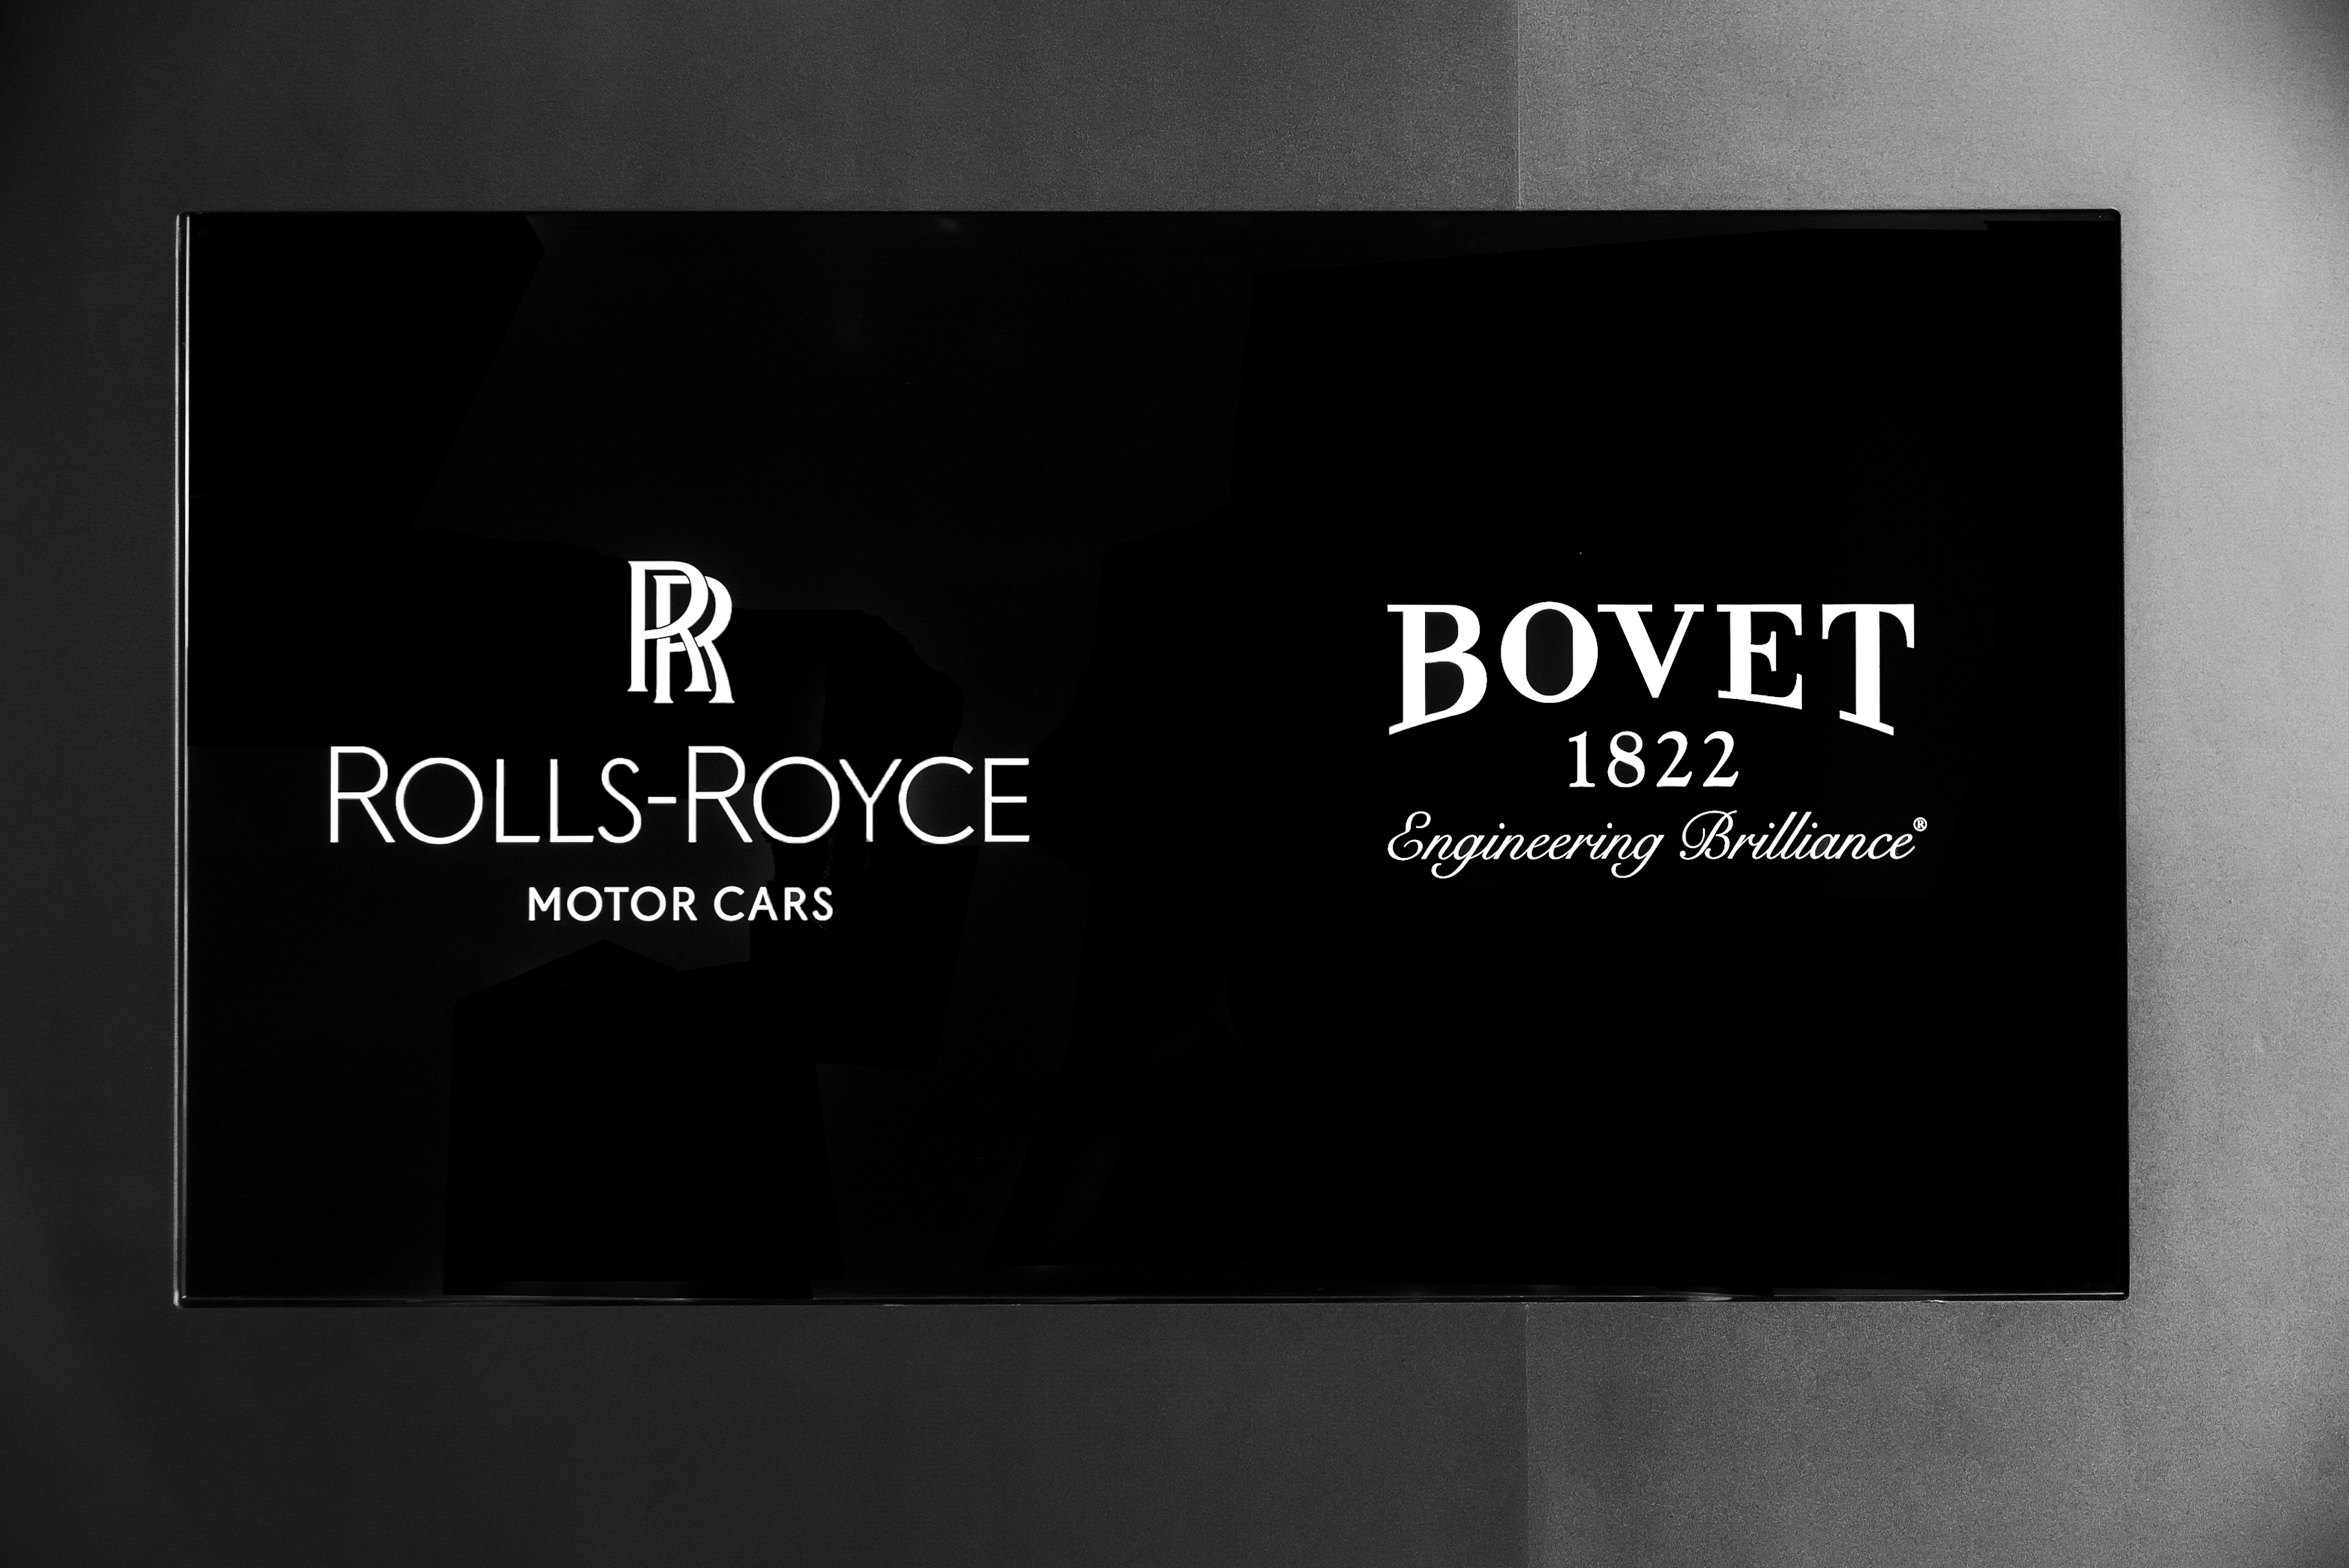 S&S Group tổ chức sự kiện triển lãm cặp đồng hồ Bovet 1822 trên tác phẩm Rolls-Royce Boat Tail